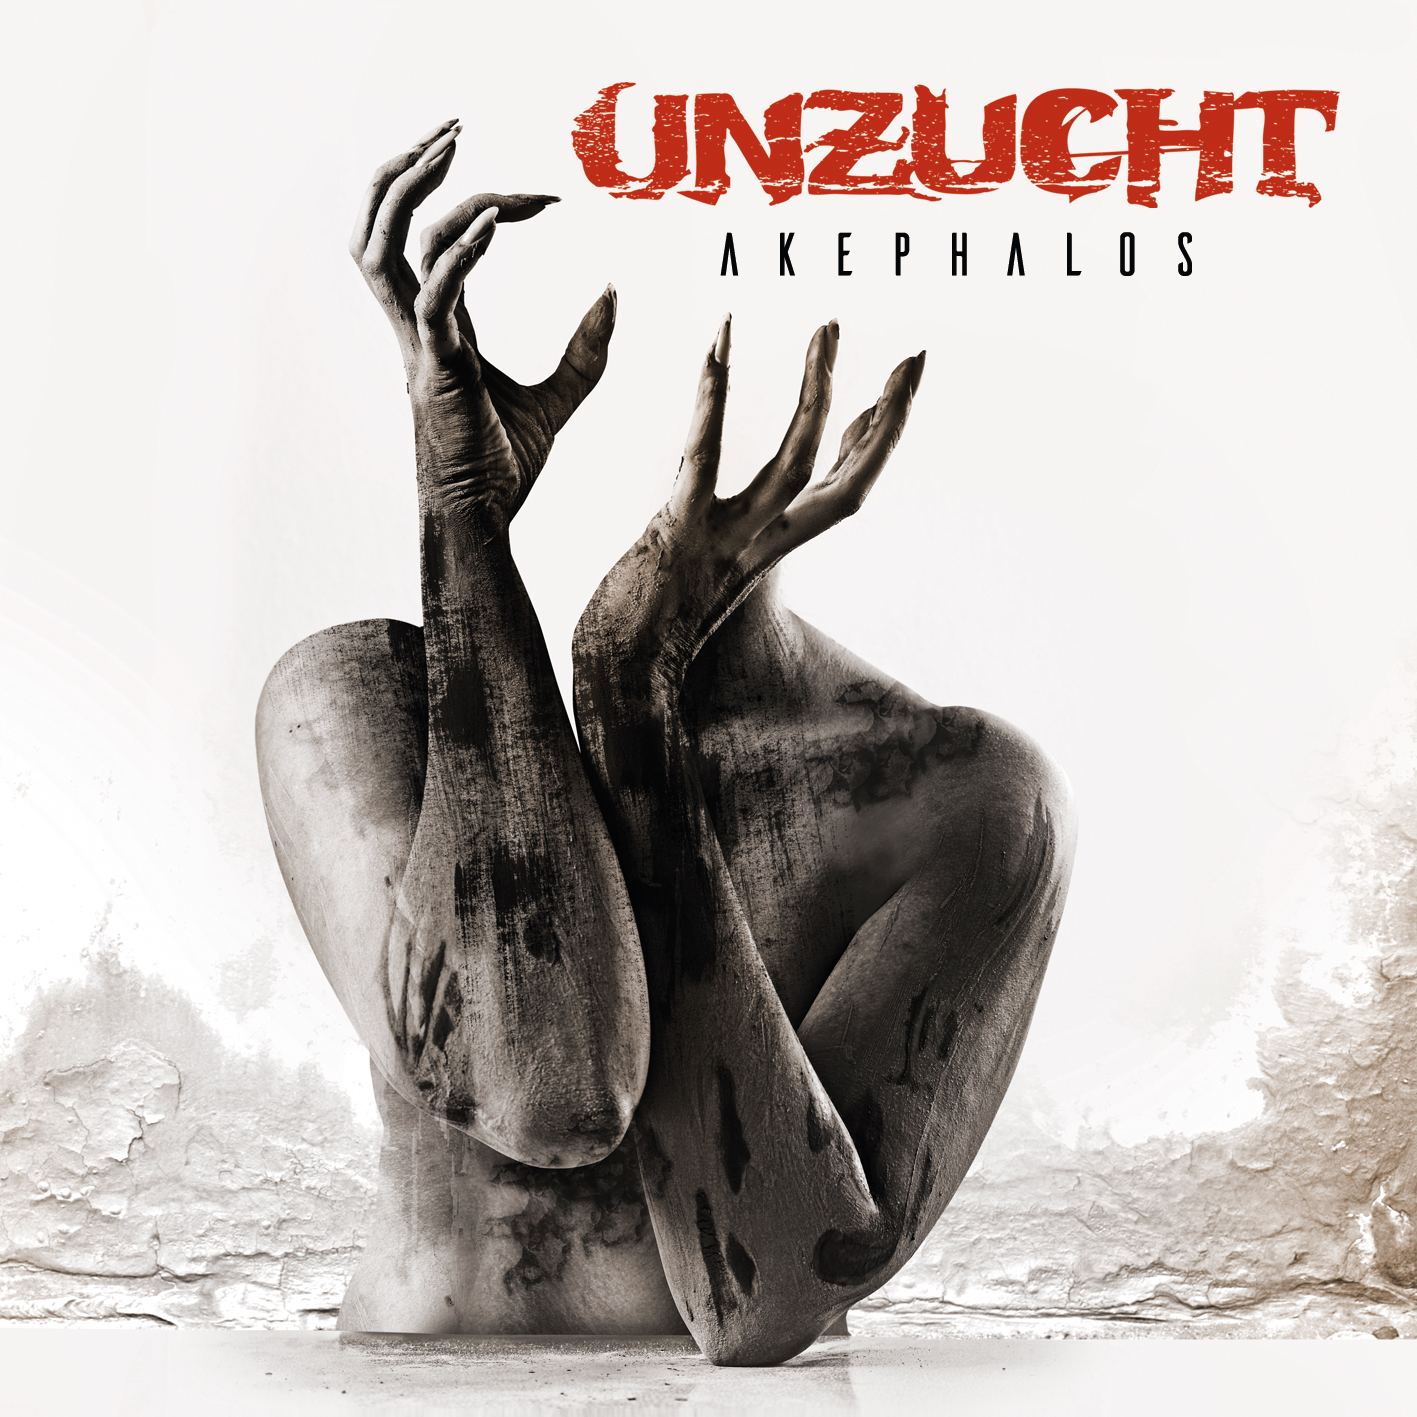 Das neue Album Akephalos von Unzucht erscheint am 27.07.2018